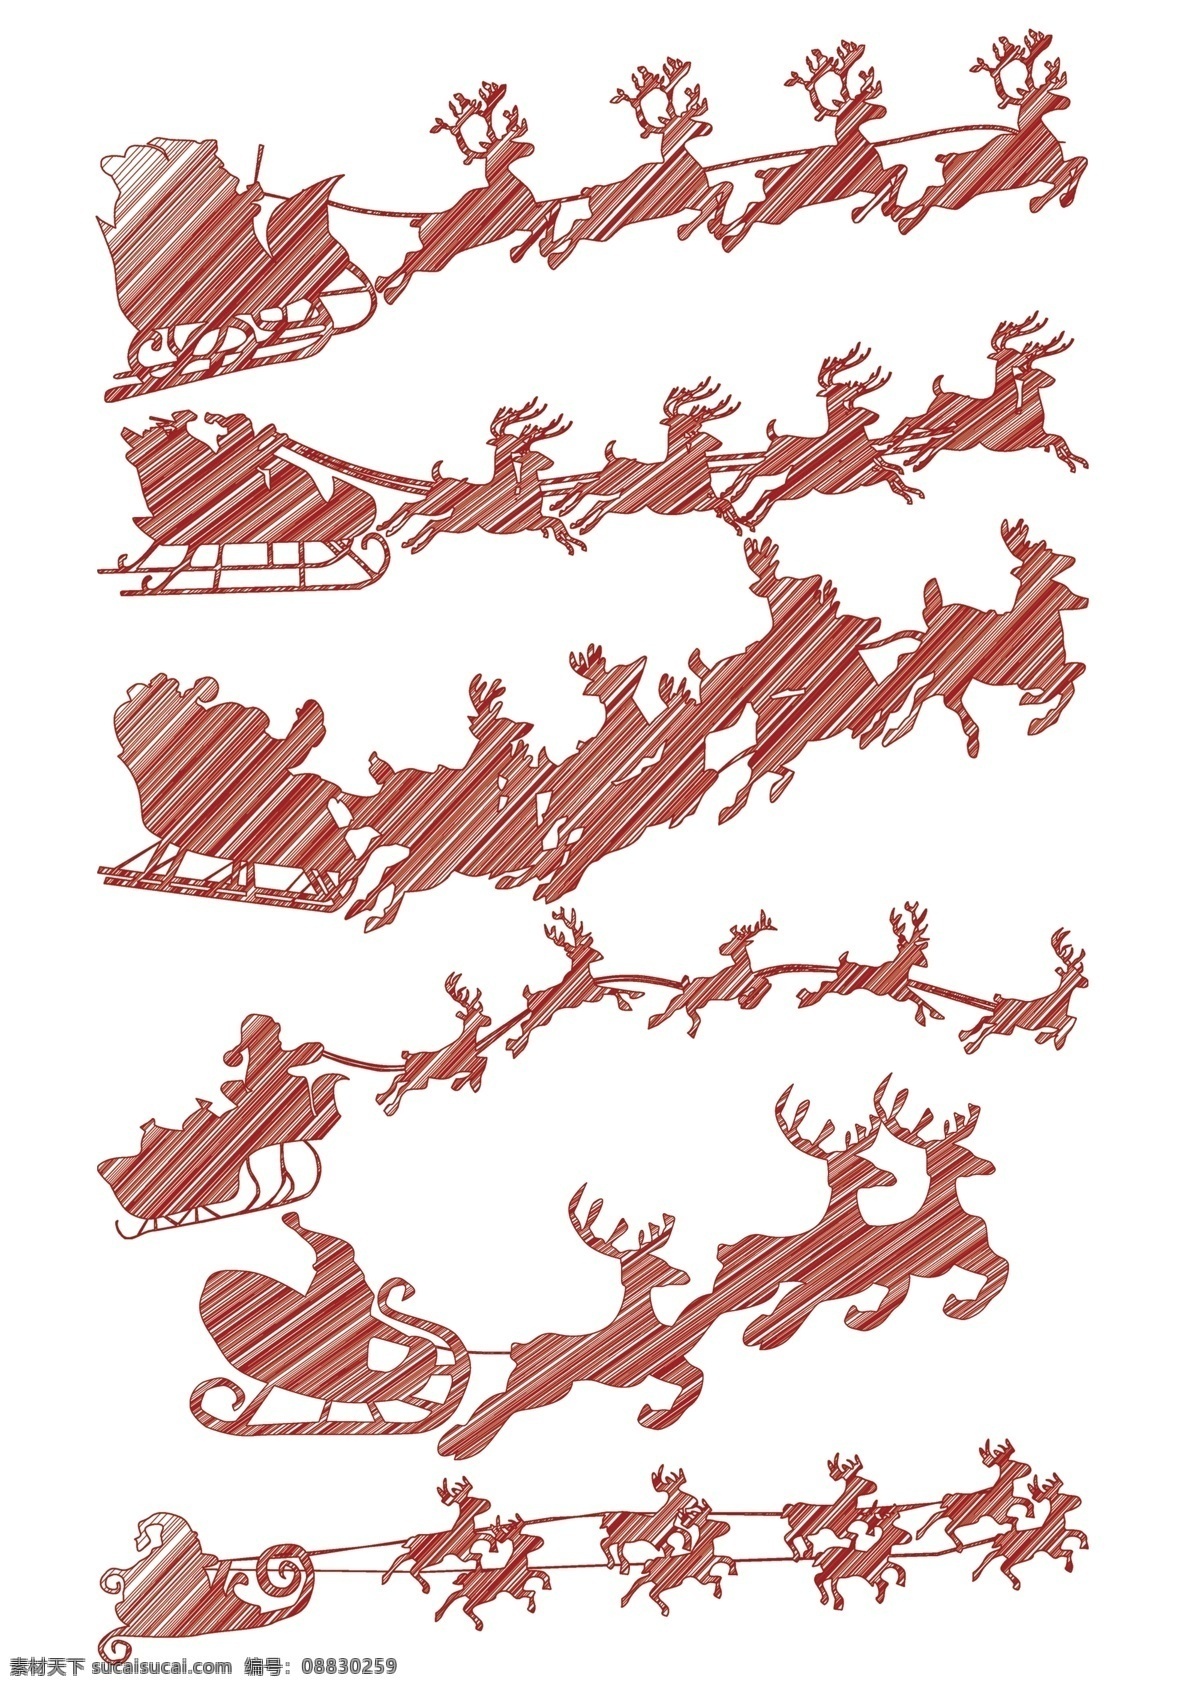 圣诞老人 雪橇 圣诞节素材 圣诞 驯鹿 红色 中国风 圣诞老人马车 圣诞底纹素材 圣诞海报 圣诞宣传单 圣诞贺卡 平面设计 卡通设计